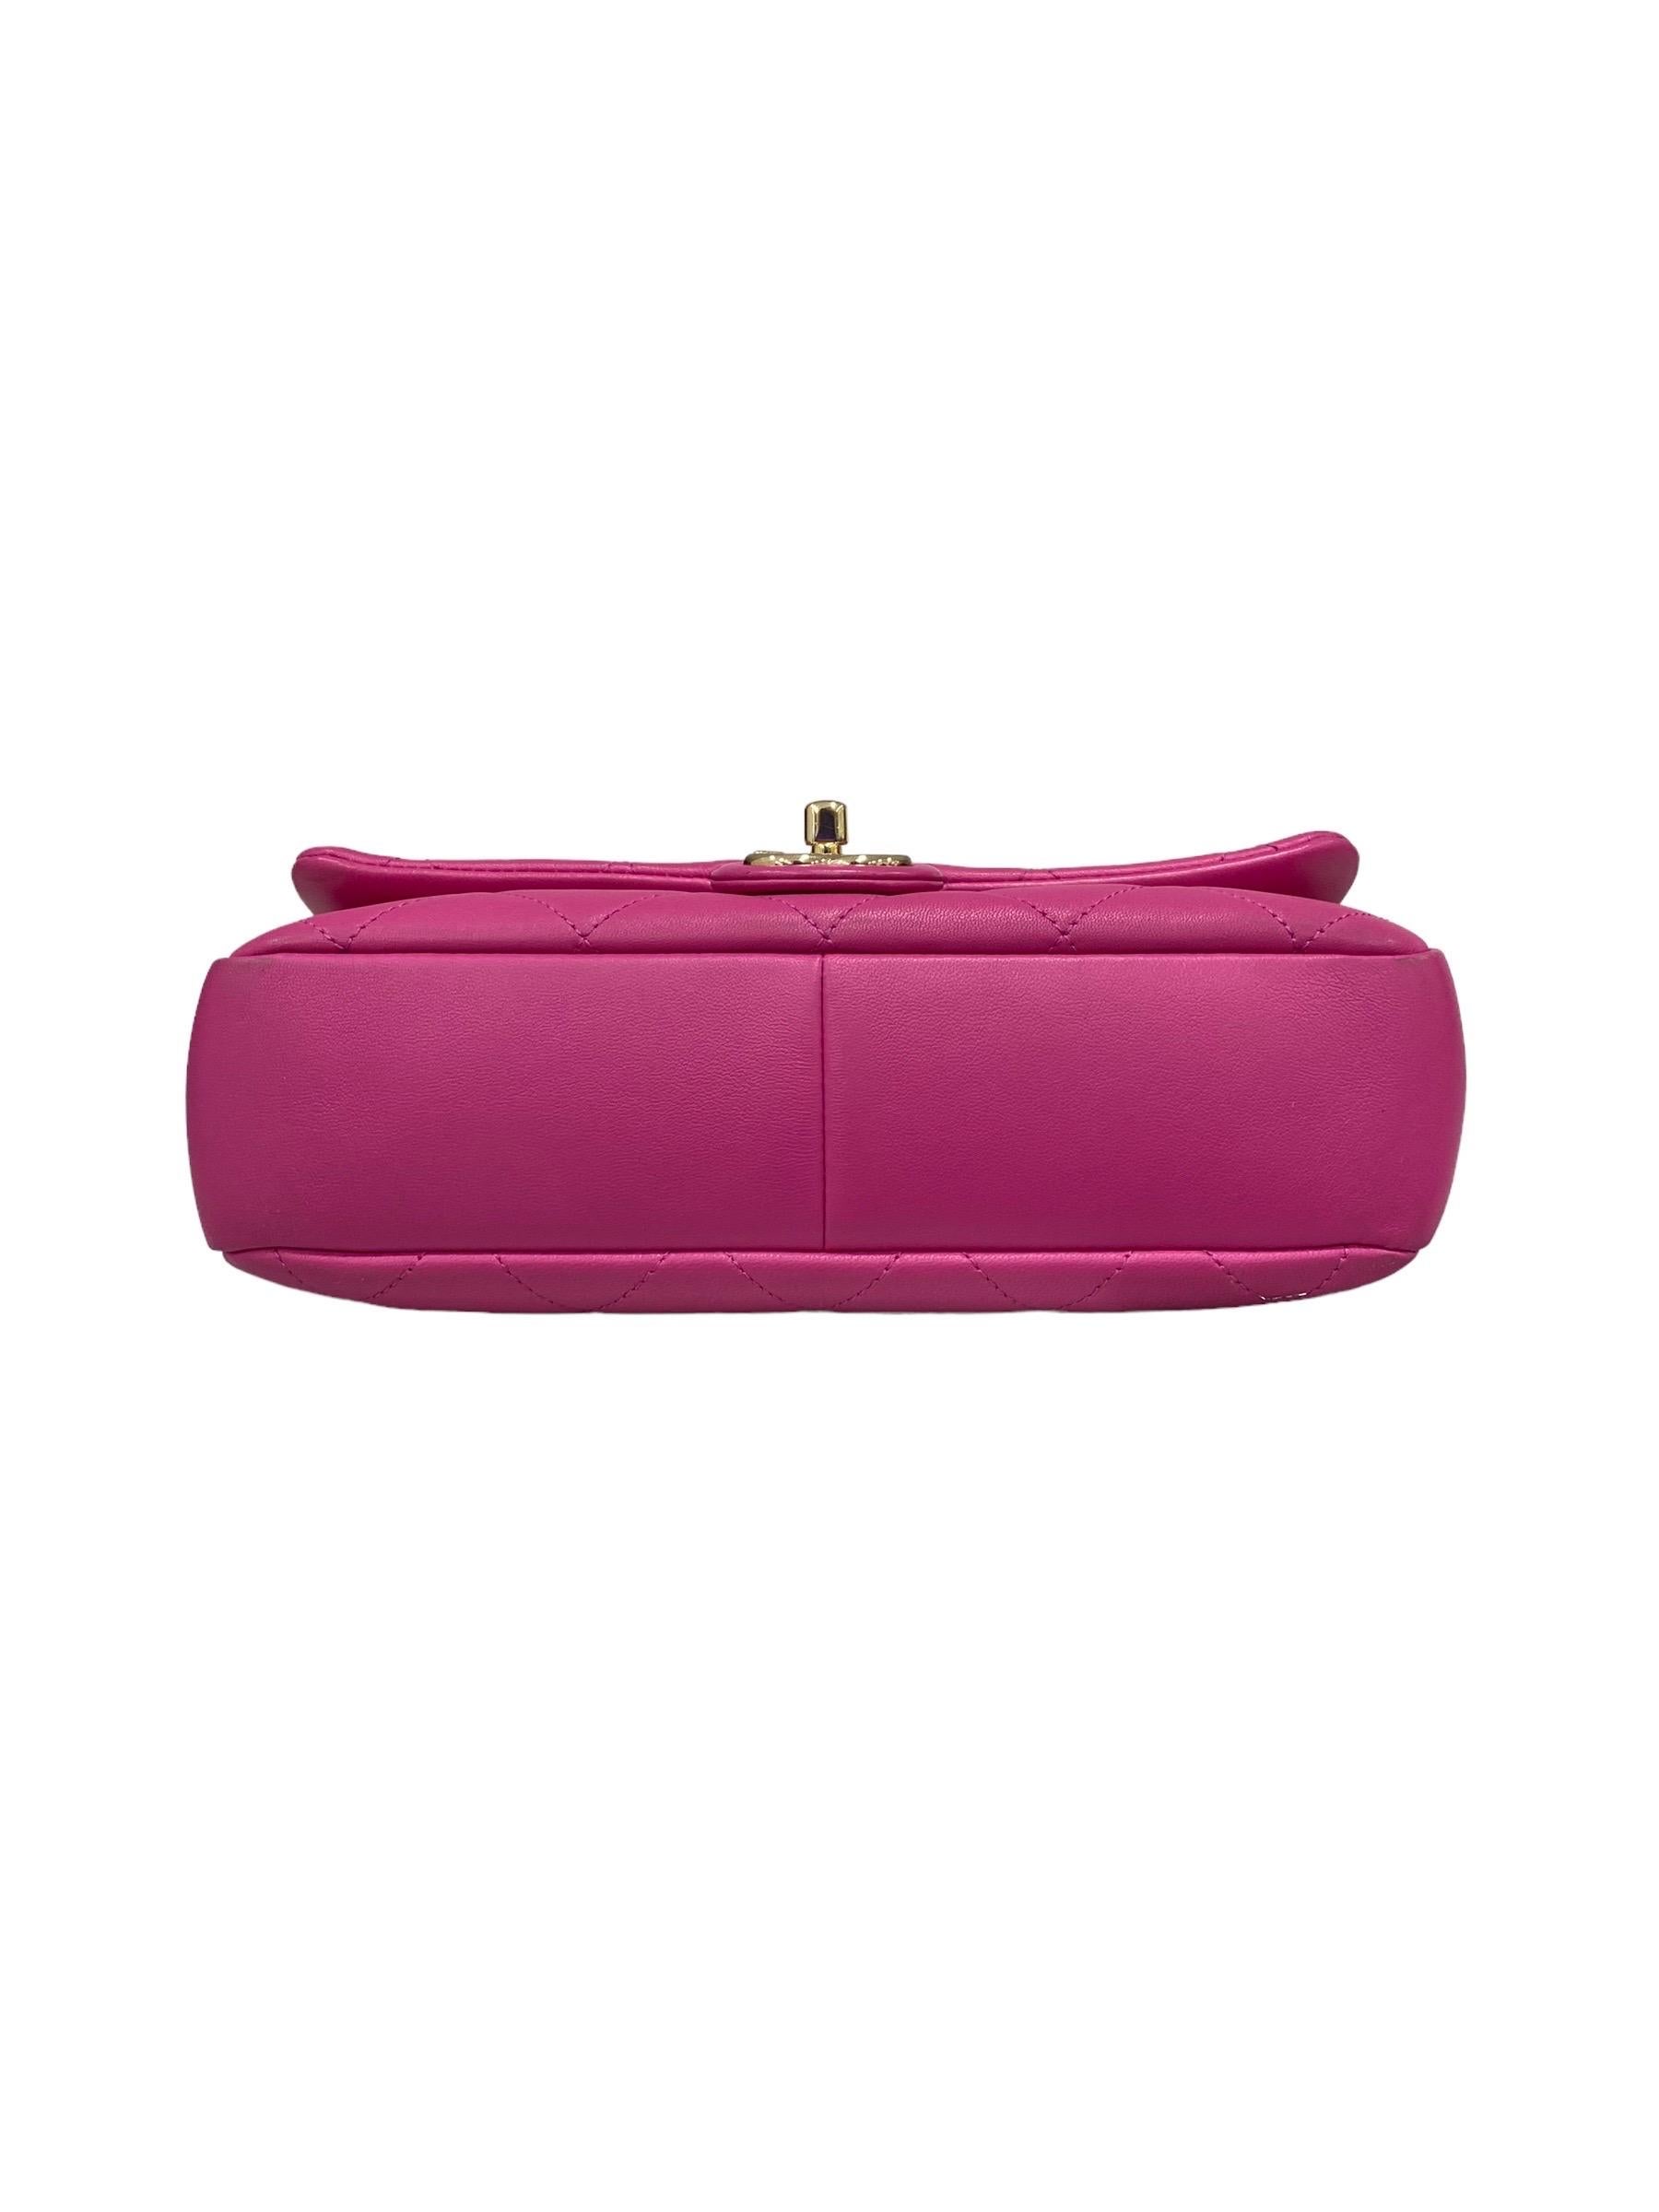 2021 Chanel 19 Pink Shoulder Bag  For Sale 1